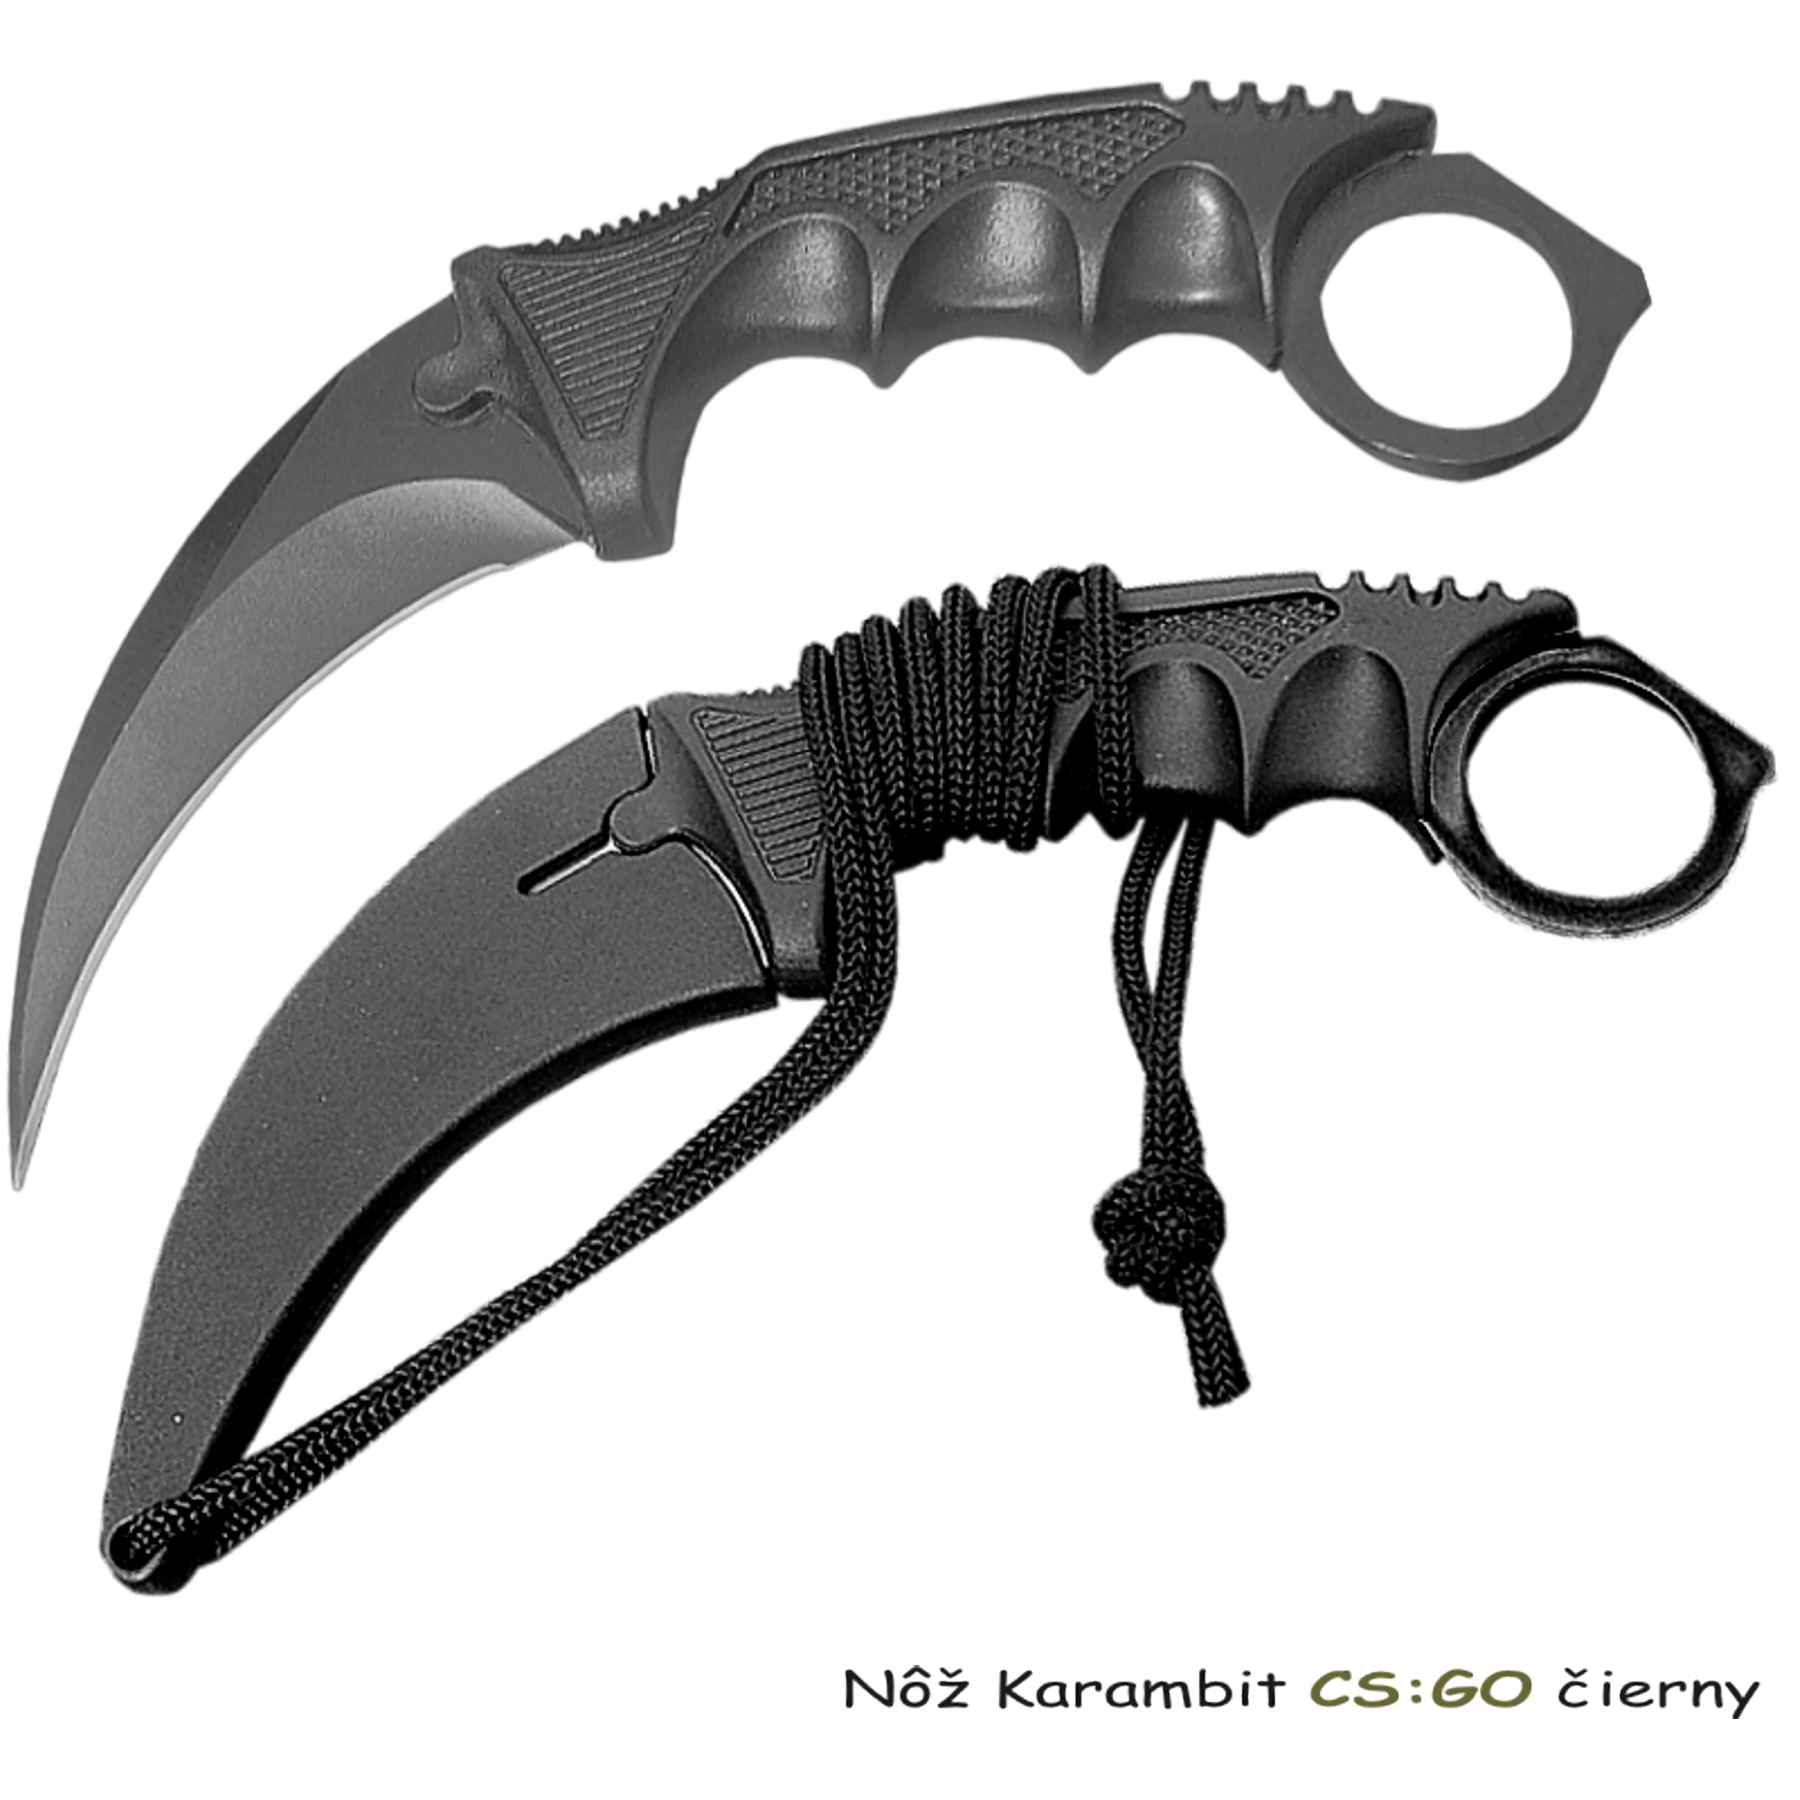 Nôž Karambit CS:GO čierny, Tifantex veľkoobchod nože